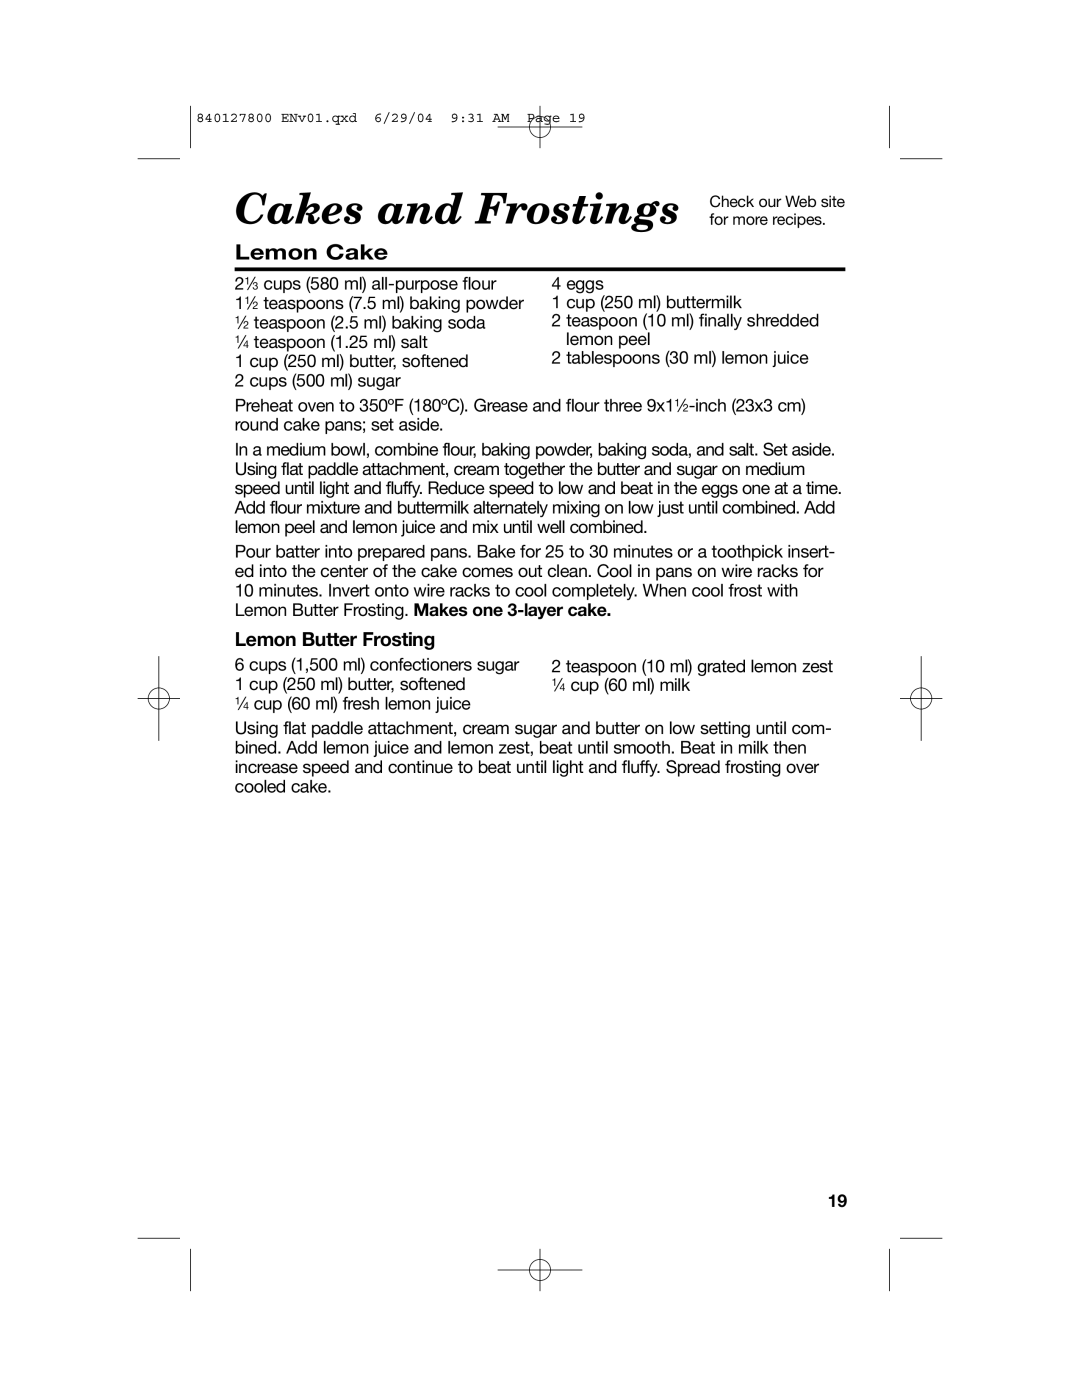 Hamilton Beach 63225 manual Lemon Cake, Lemon Butter Frosting, Cakes and Frostings 